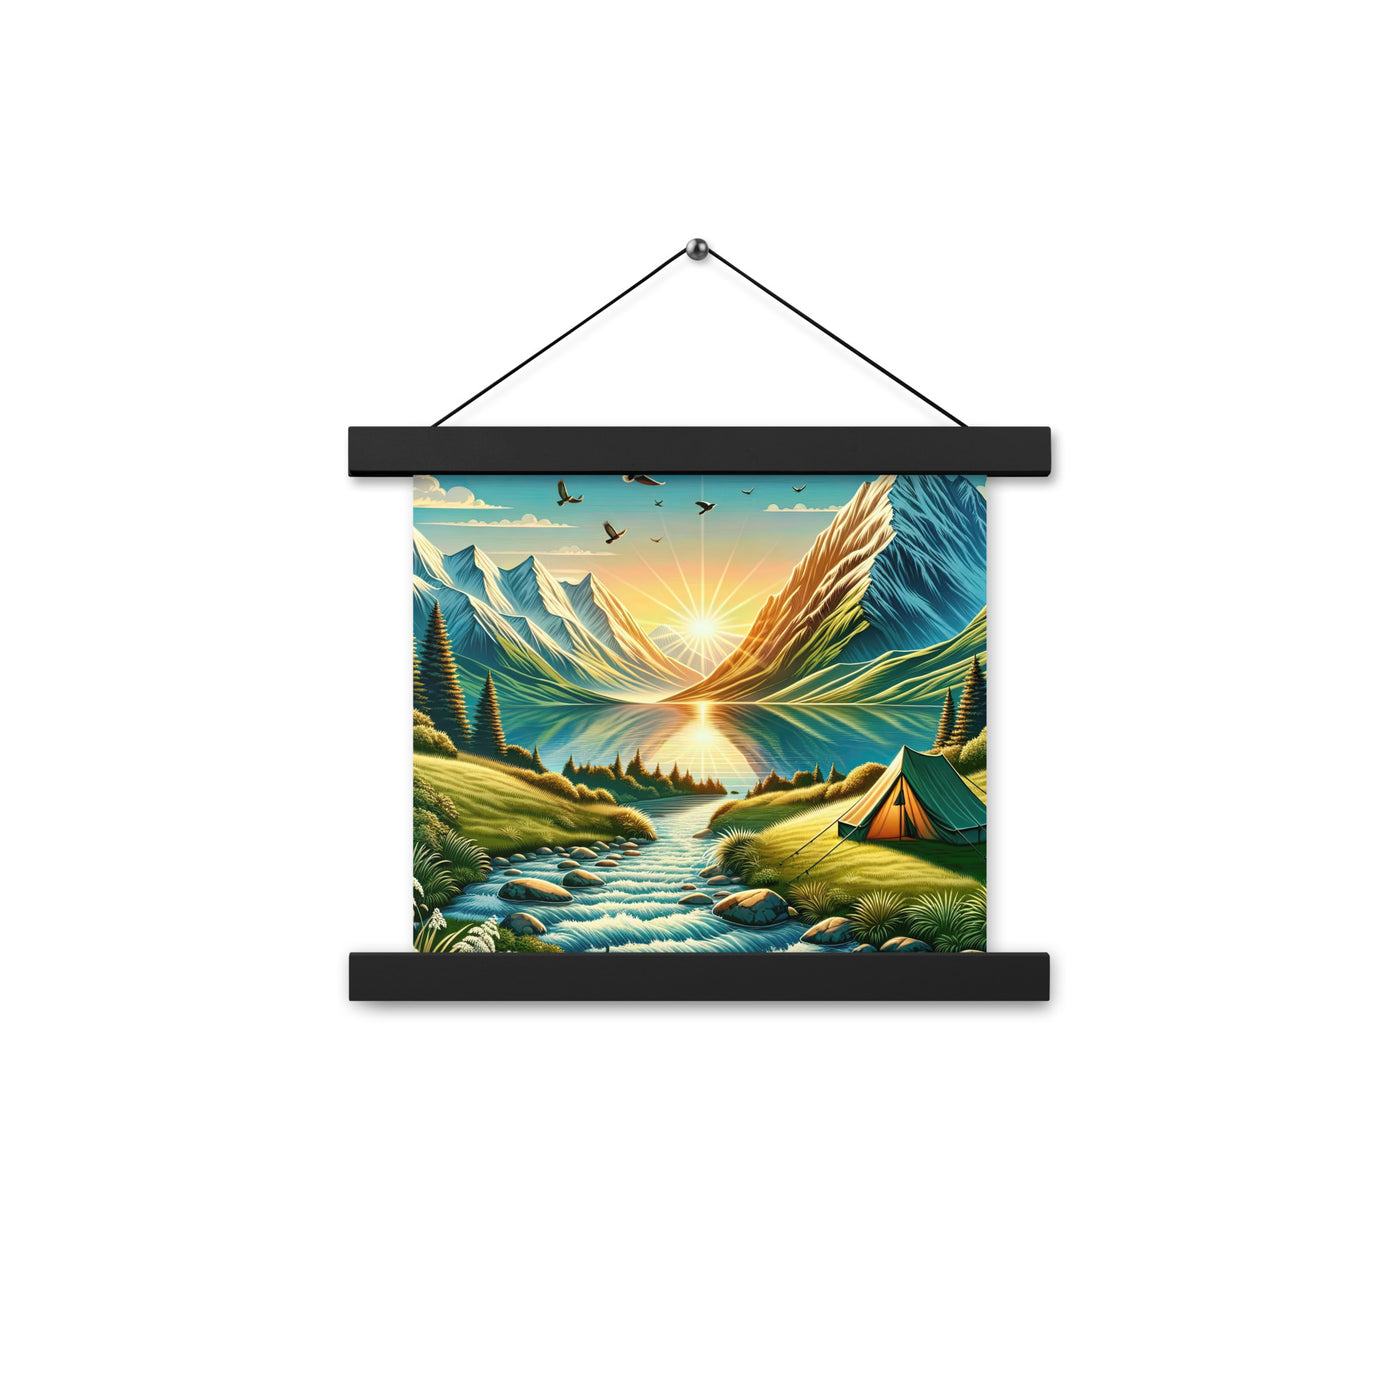 Zelt im Alpenmorgen mit goldenem Licht, Schneebergen und unberührten Seen - Premium Poster mit Aufhängung berge xxx yyy zzz 25.4 x 25.4 cm